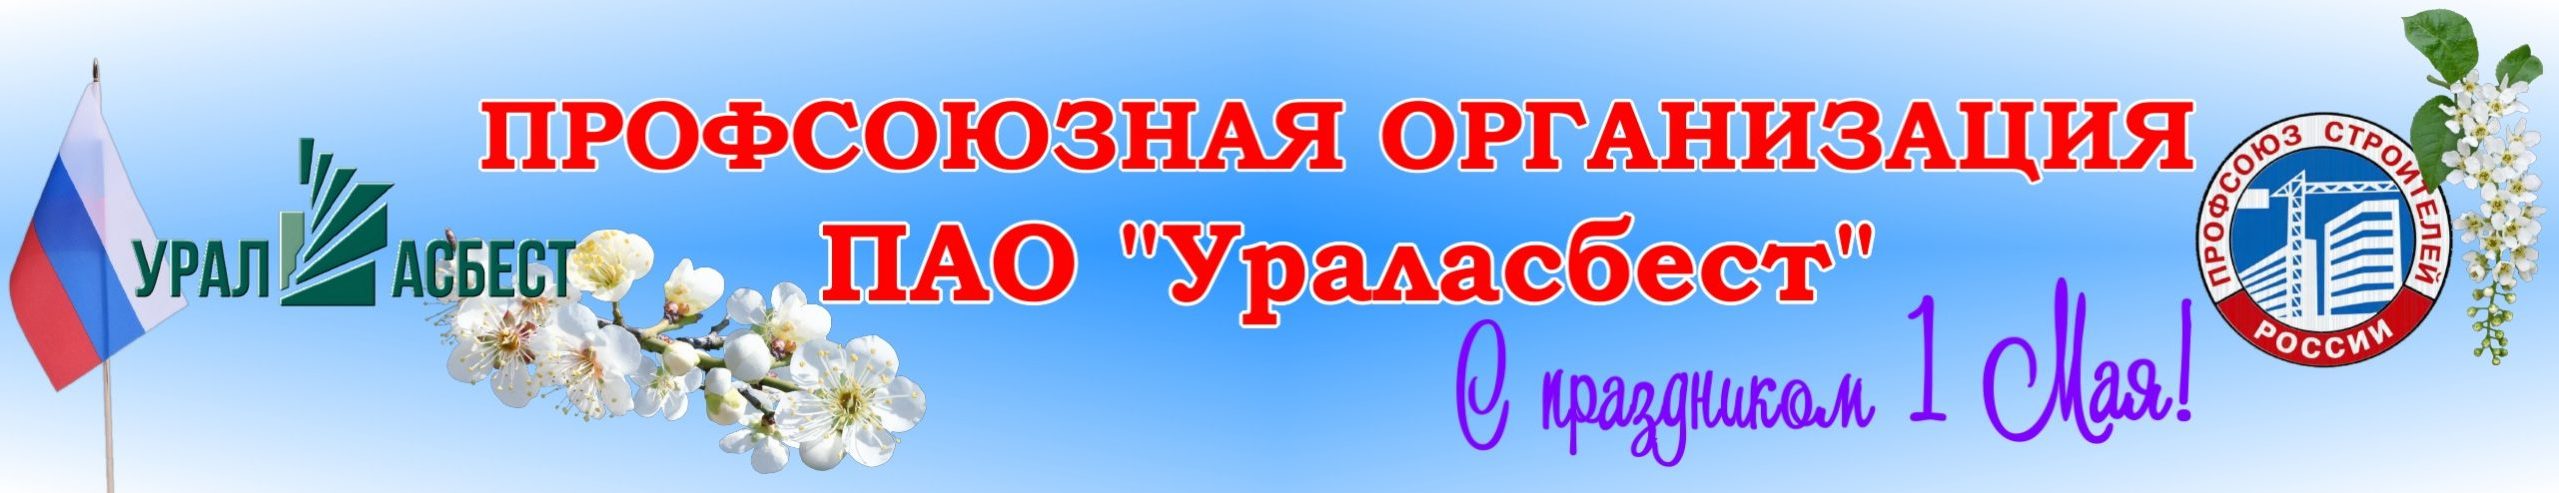 Профсоюзная организация ПАО "Ураласбест"